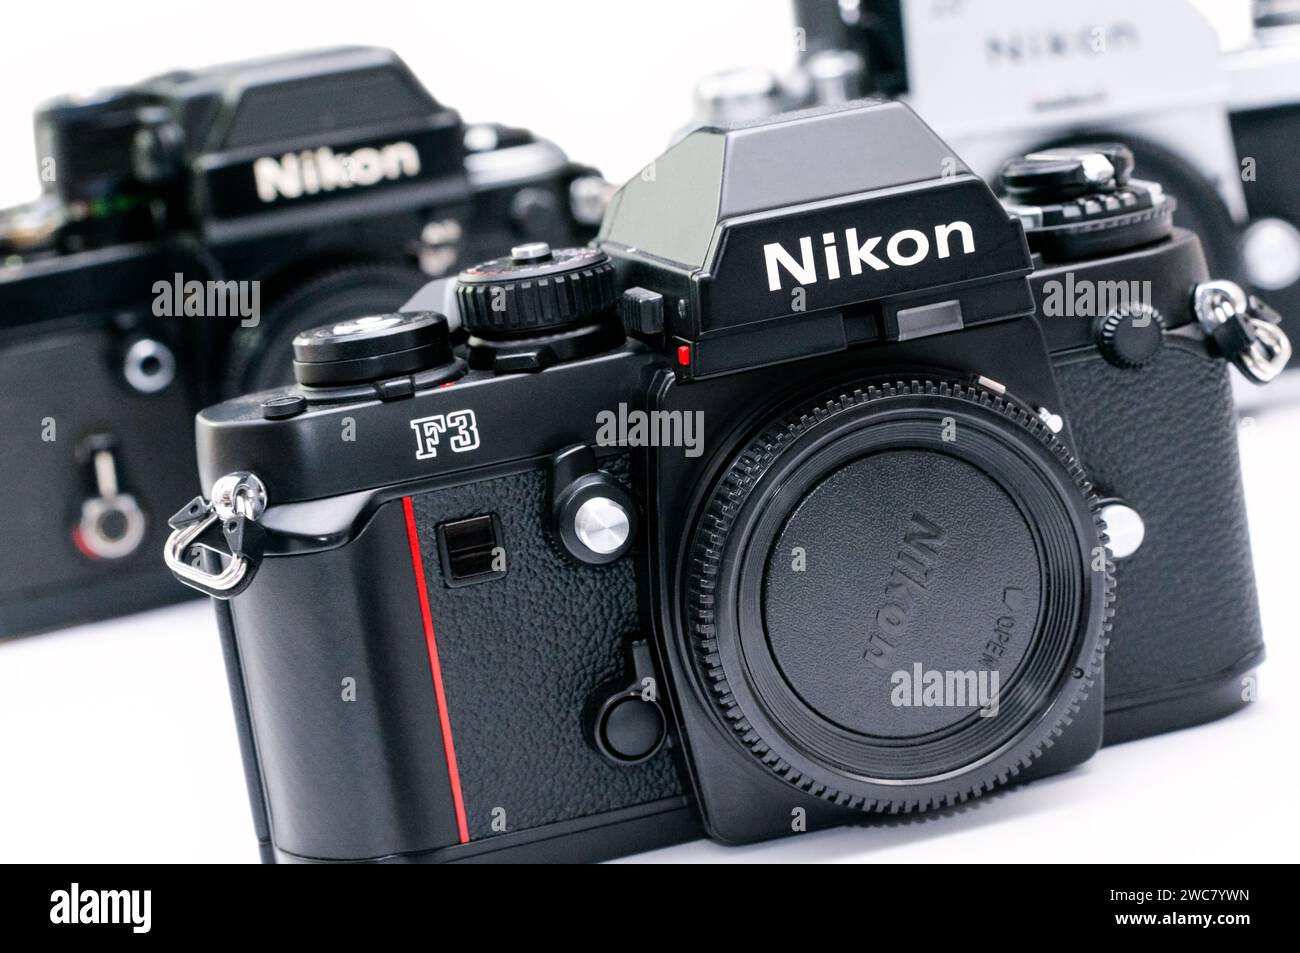 L'iconica fotocamera Nikon F3 affiancata da Nikon F e F2 Classics, un tributo all'eredità duratura dell'evoluzione della fotocamera Nikon . Foto Stock